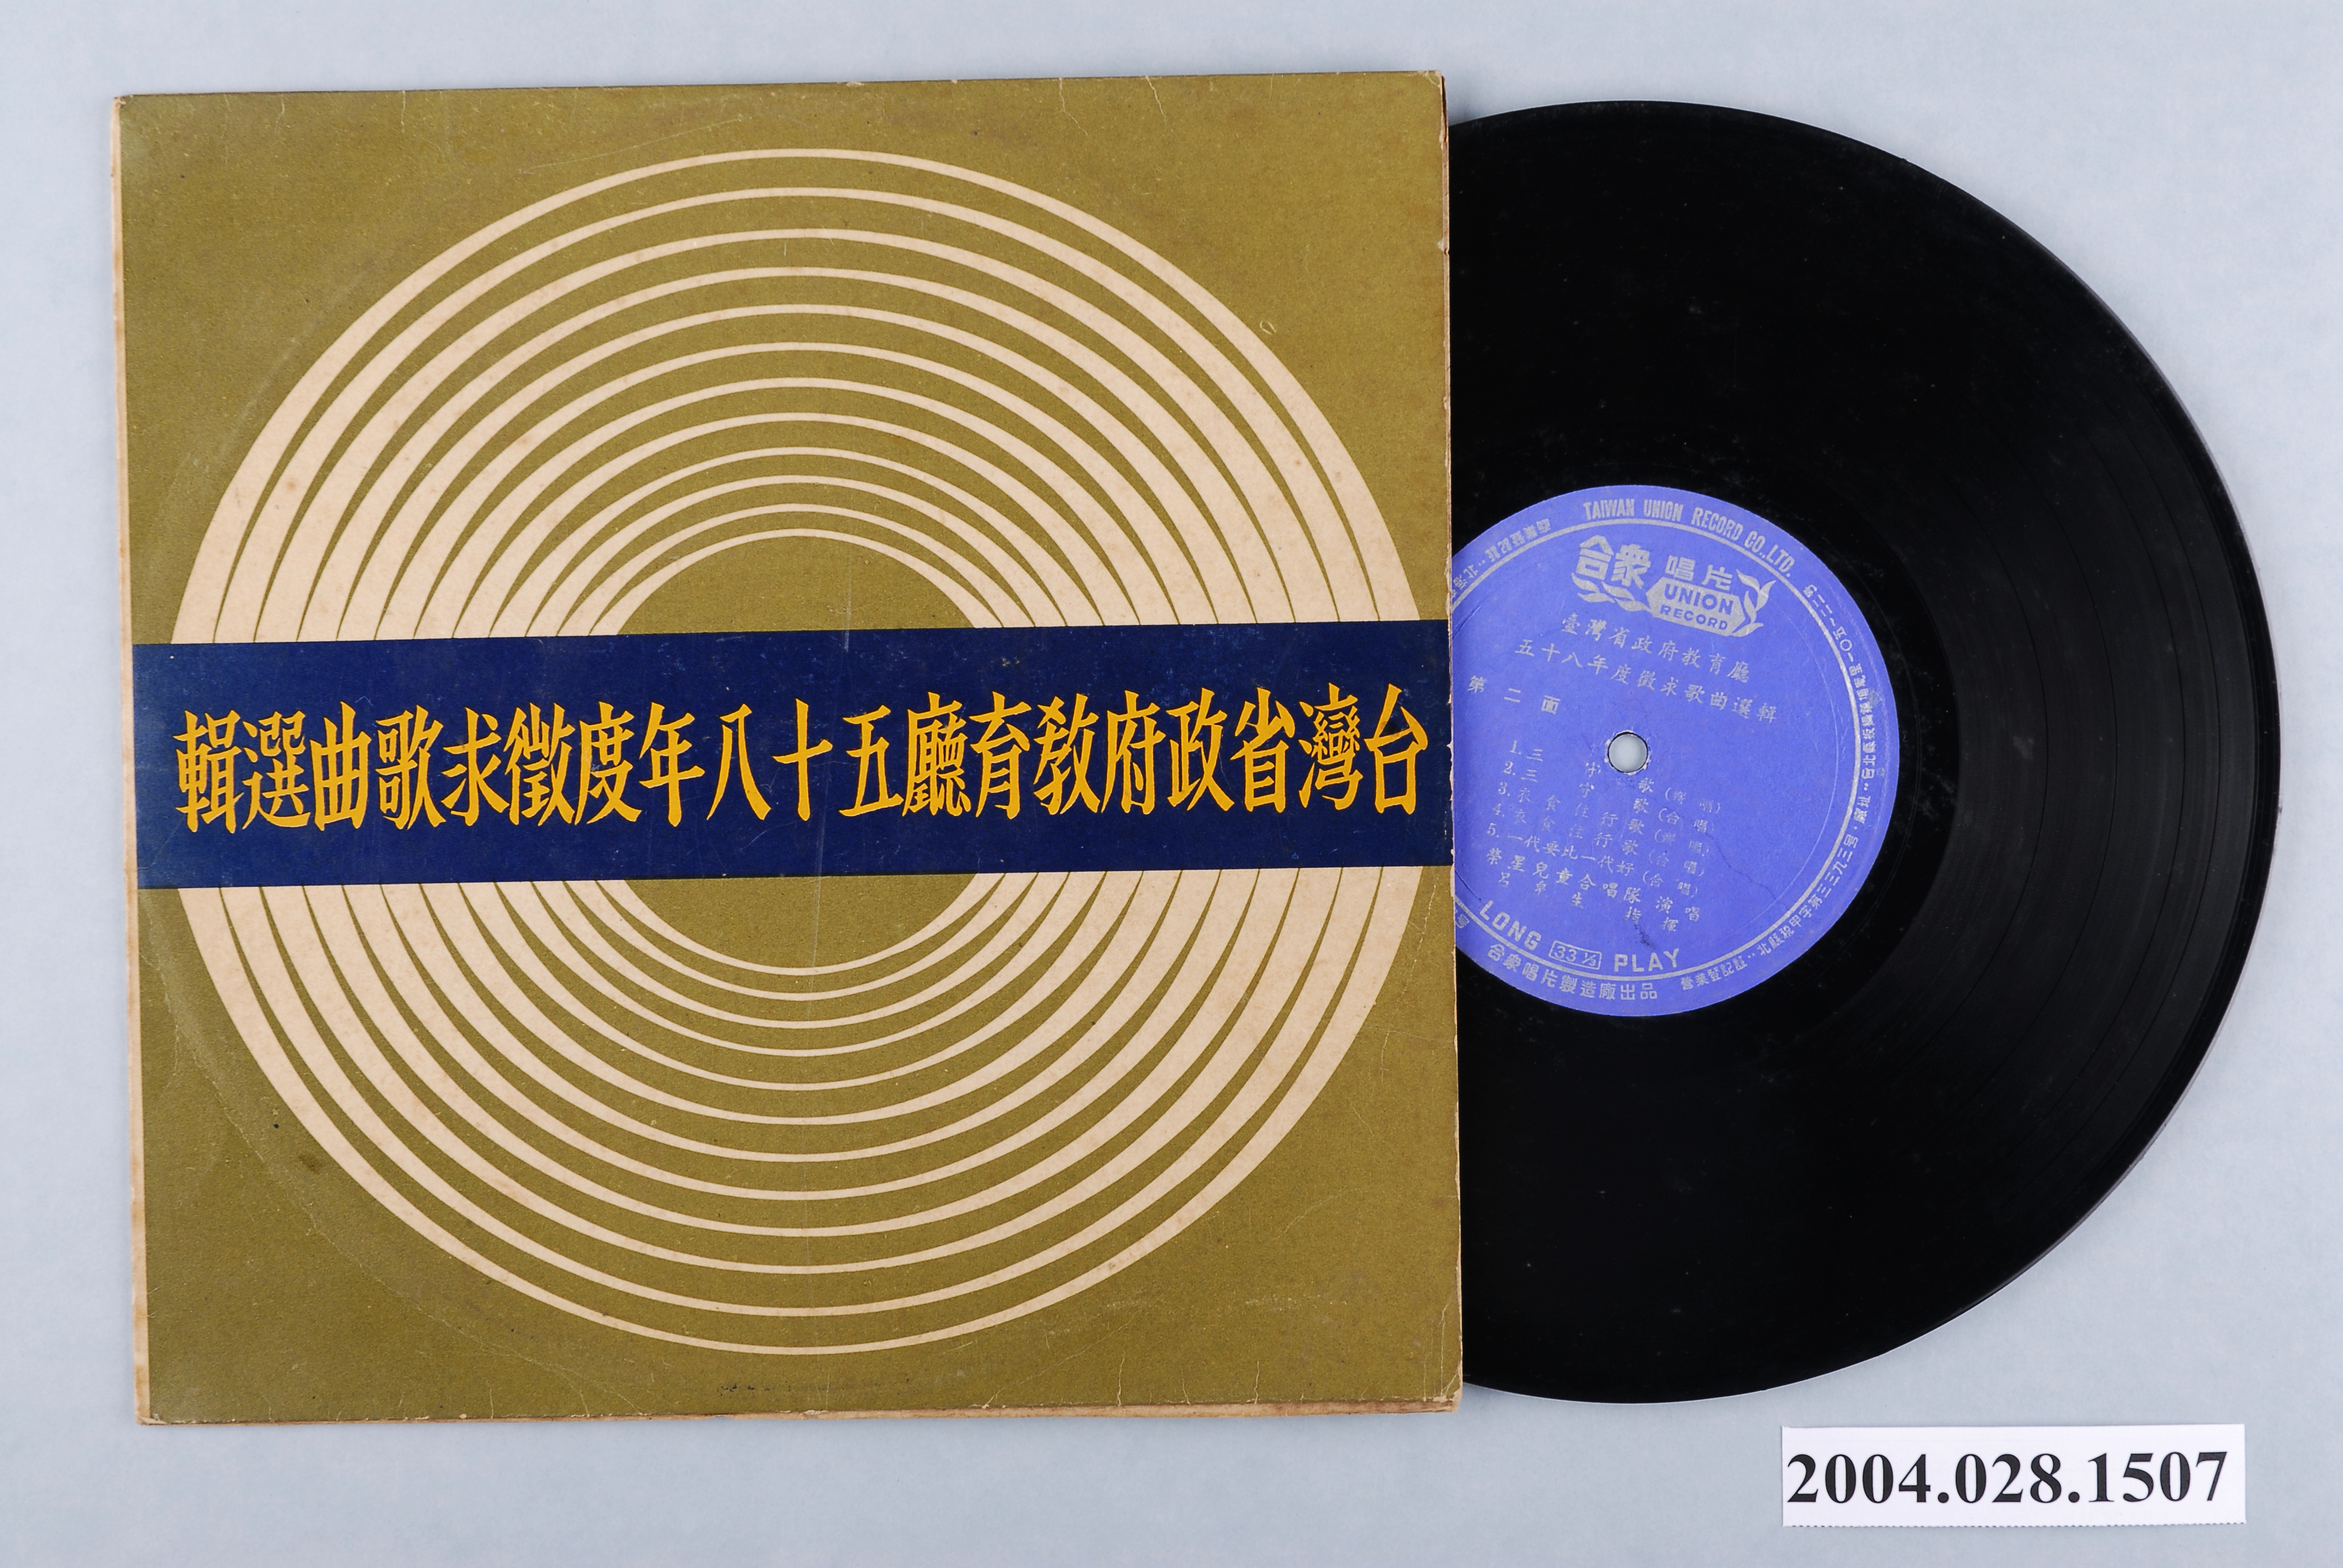 合眾唱片公司發行華語歌曲專輯《台灣省政府教育廳五十八年度徵求歌曲選輯》 圖示